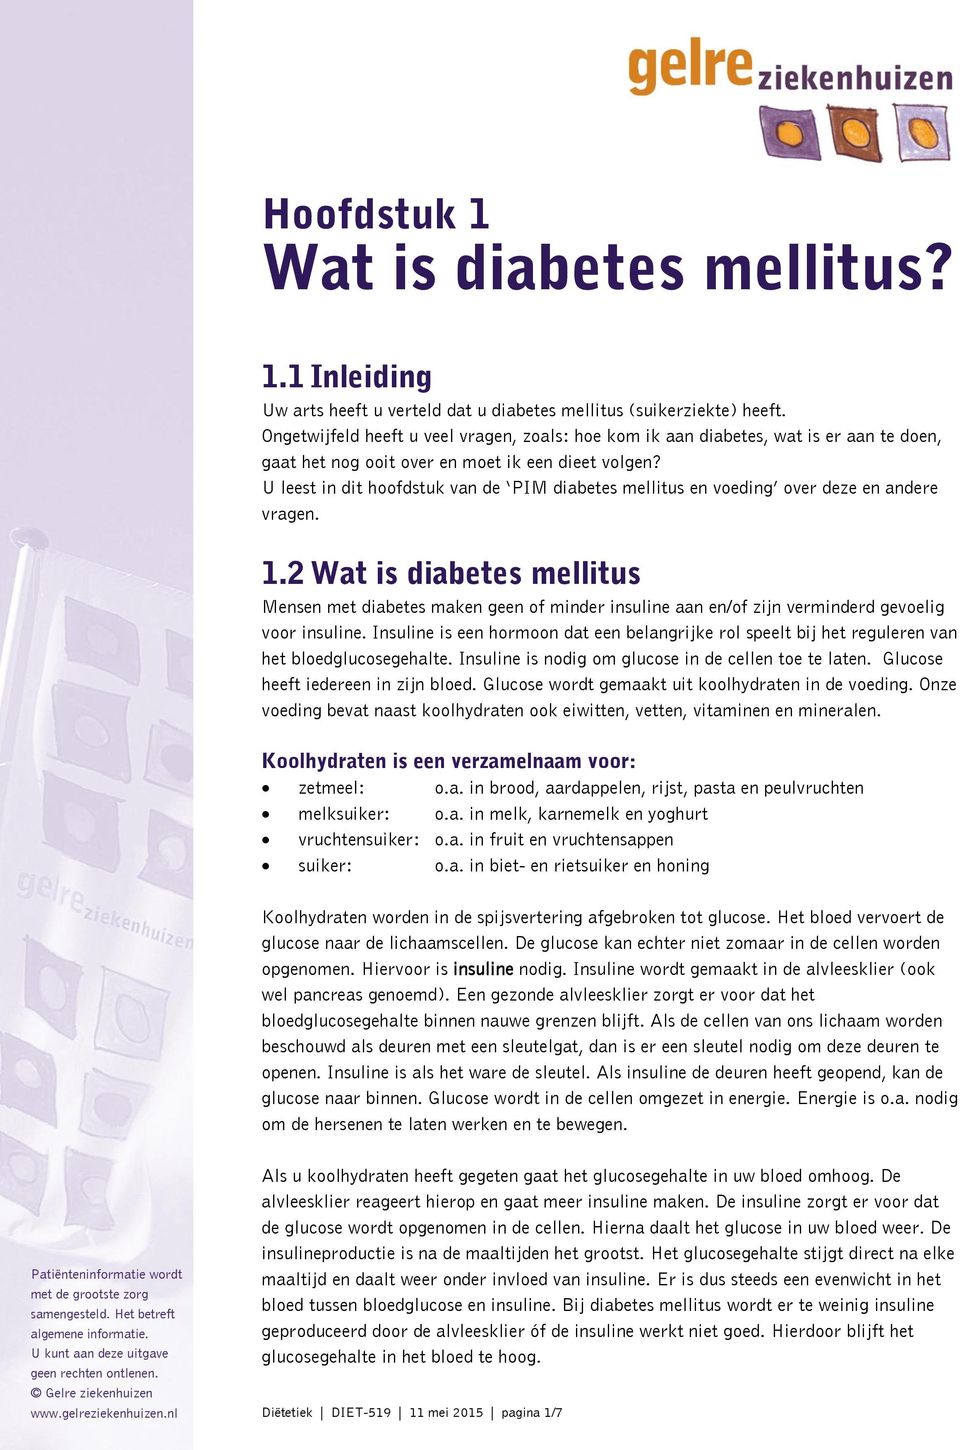 U leest in dit hoofdstuk van de PIM diabetes mellitus en voeding over deze en andere vragen. 1.